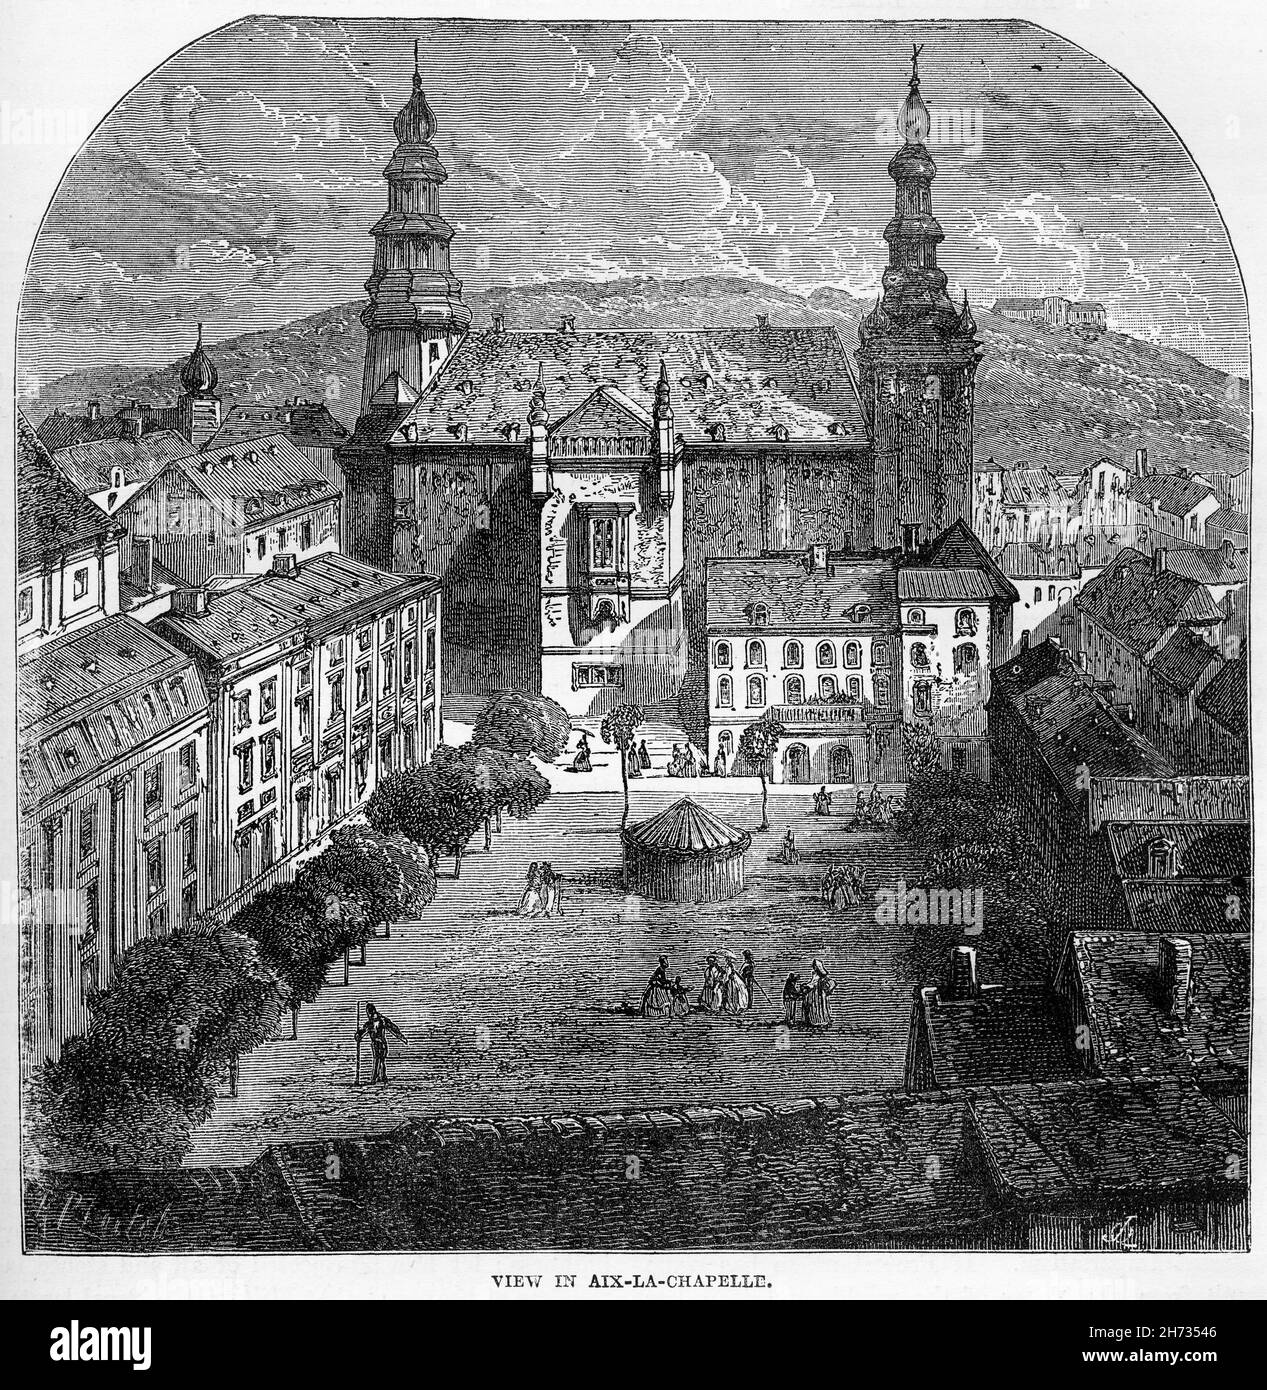 Stich von Aachen oder Aix-la-Chapelle im Jahre 1500s. Aachen ist heute die 13th größte Stadt in Nordrhein-Westfalen und die 28th größte Stadt Deutschlands. Stockfoto